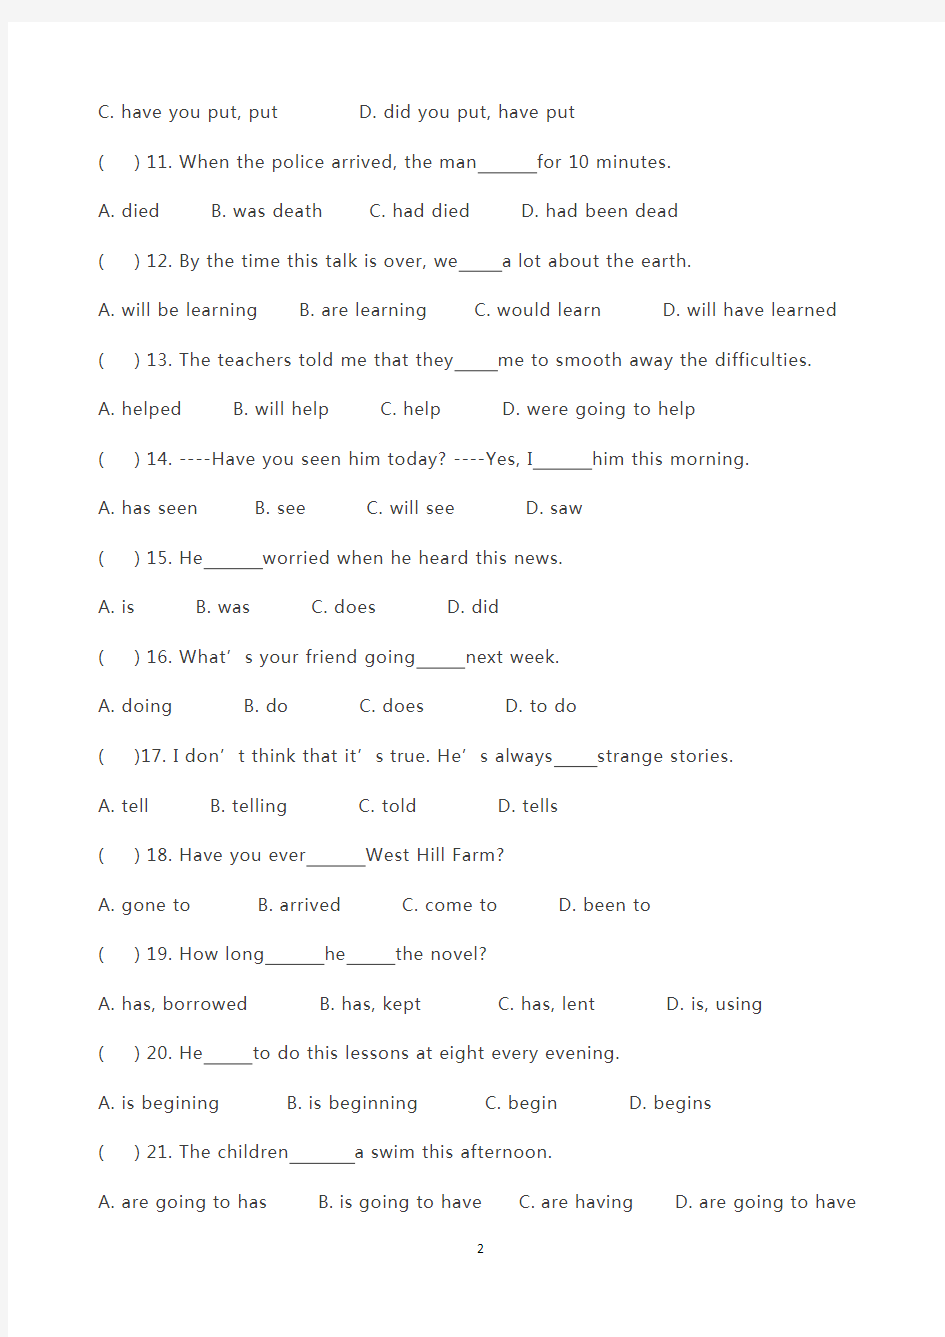 初中英语语法练习(单选100题,包含初中所有语法点)